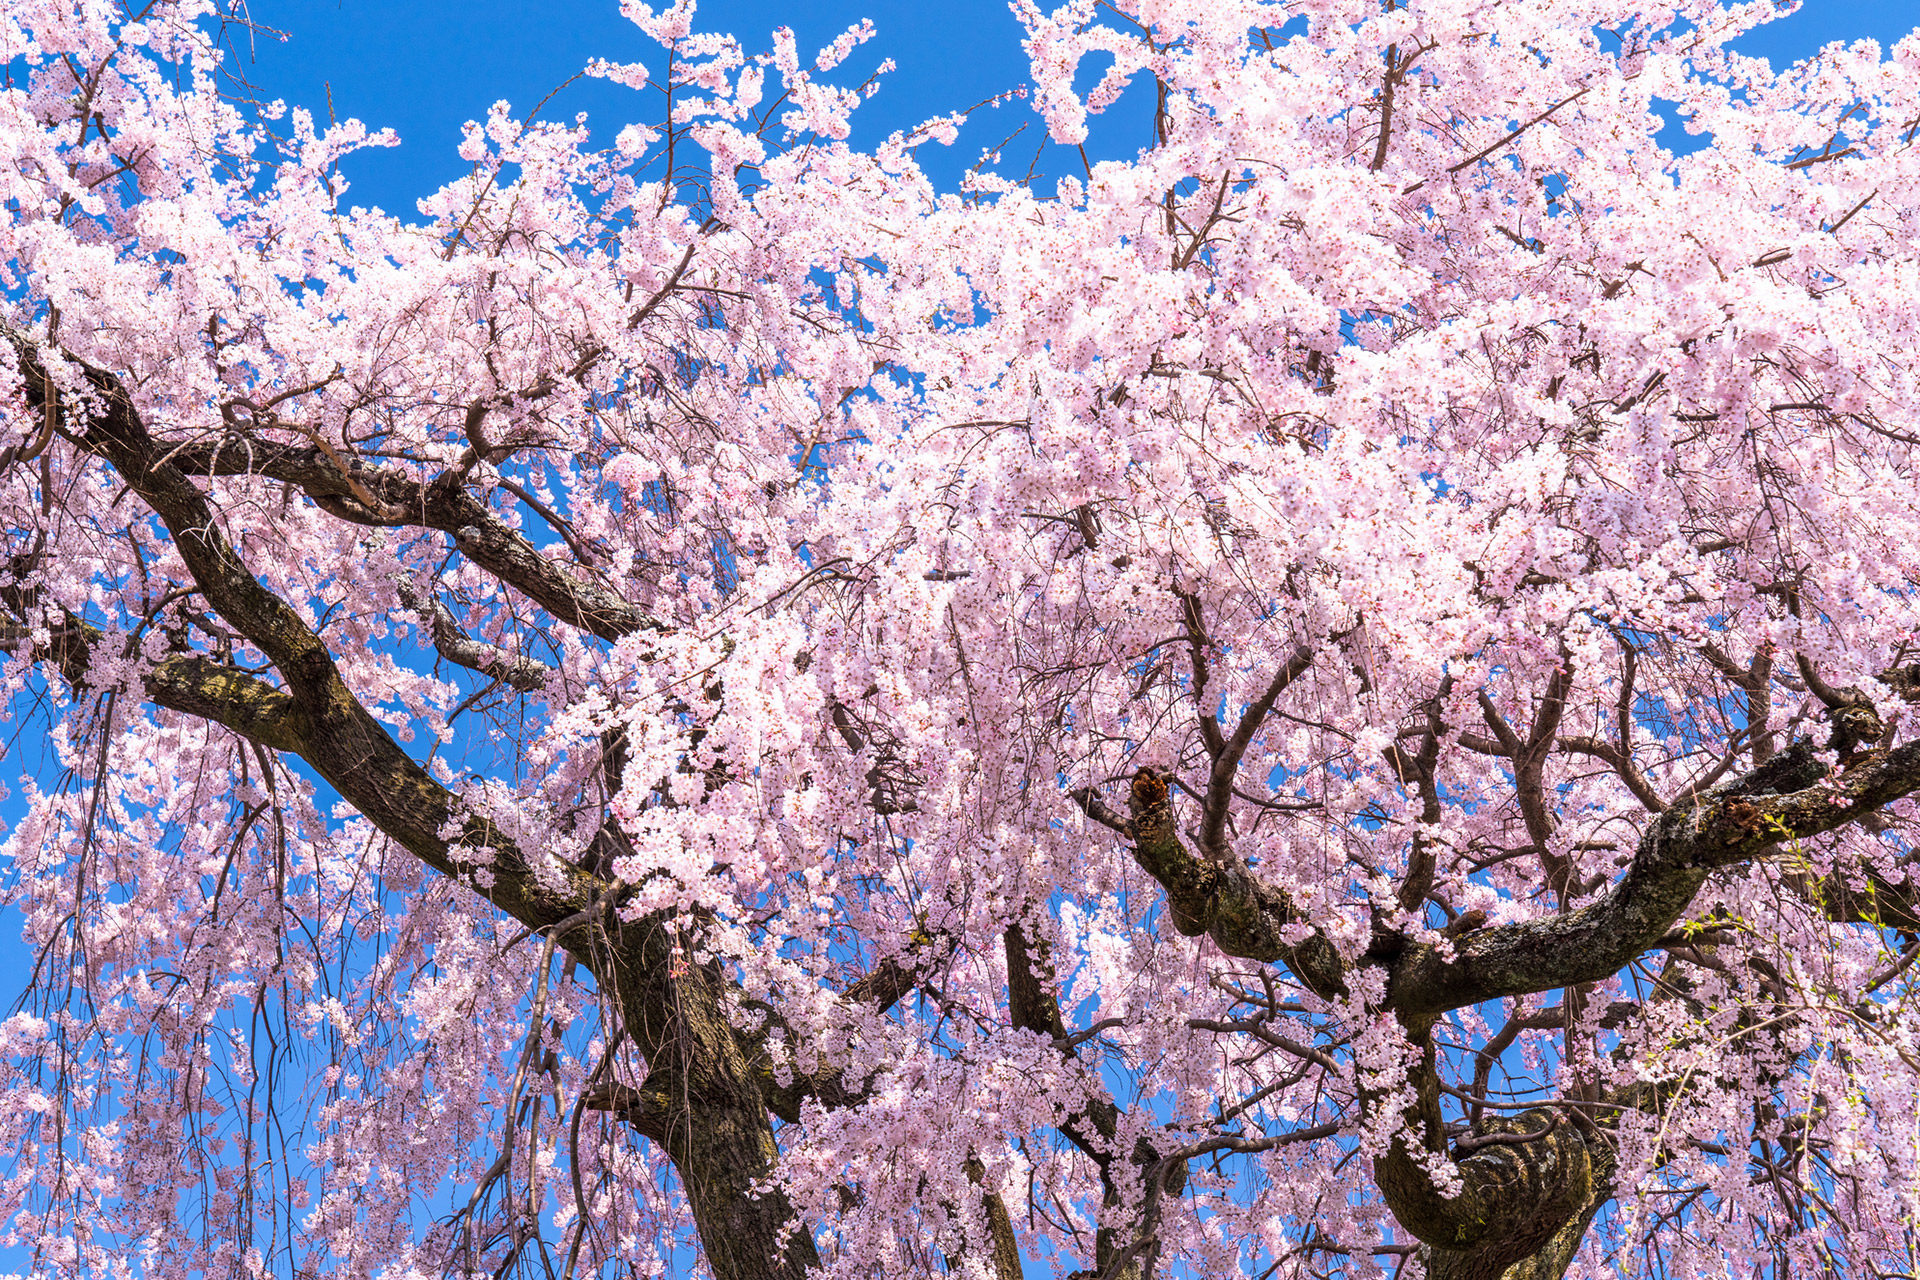 京都有很多櫻花名勝。